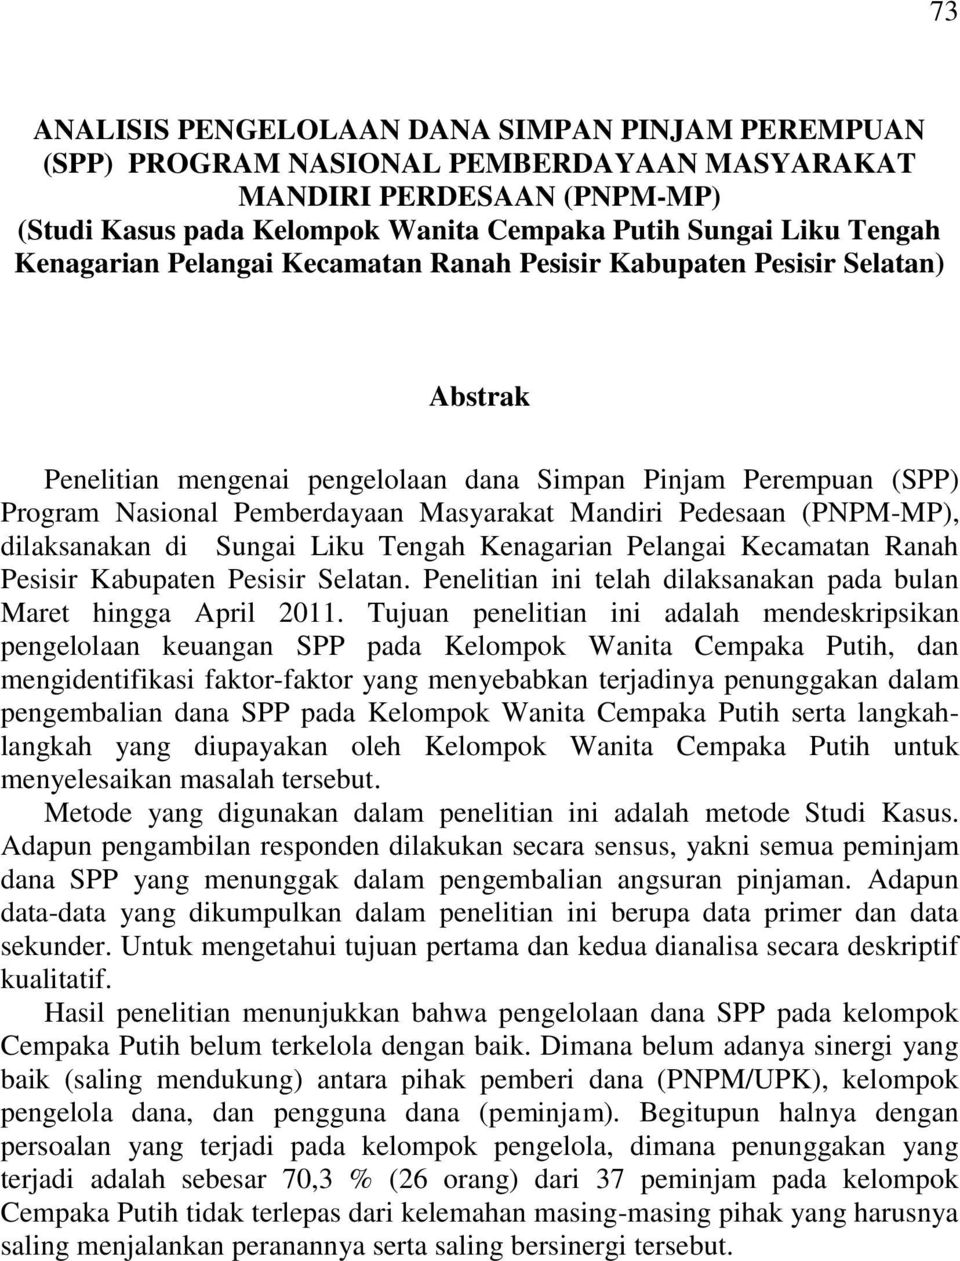 Pedesaan (PNPM-MP), dilaksanakan di Sungai Liku Tengah Kenagarian Pelangai Kecamatan Ranah Pesisir Kabupaten Pesisir Selatan. Penelitian ini telah dilaksanakan pada bulan Maret hingga April 2011.